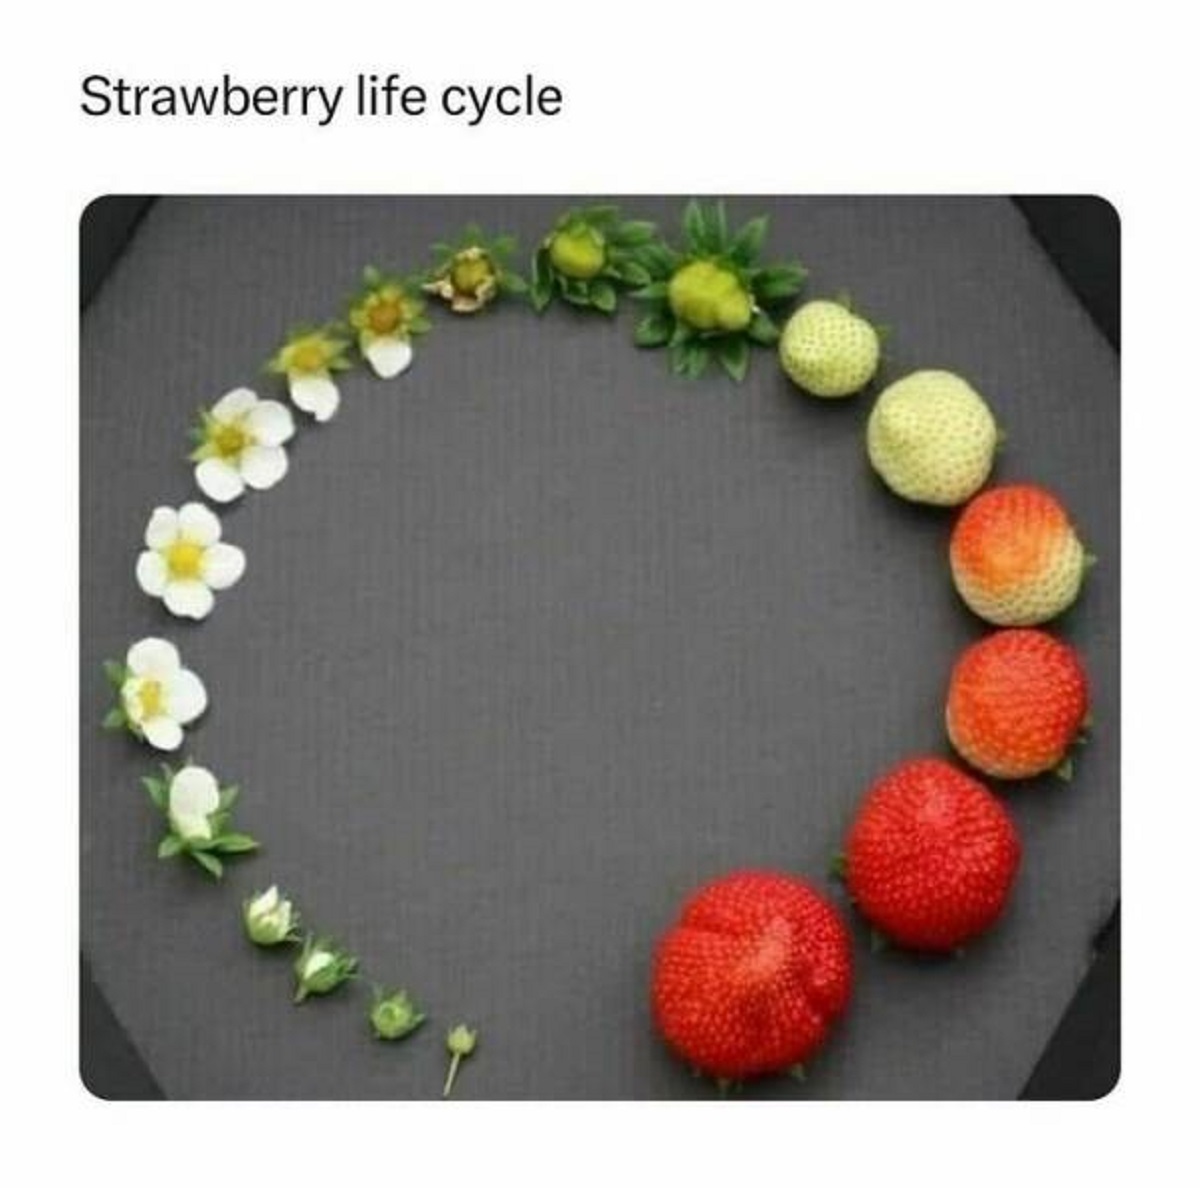 strawberry life cycle - Strawberry life cycle